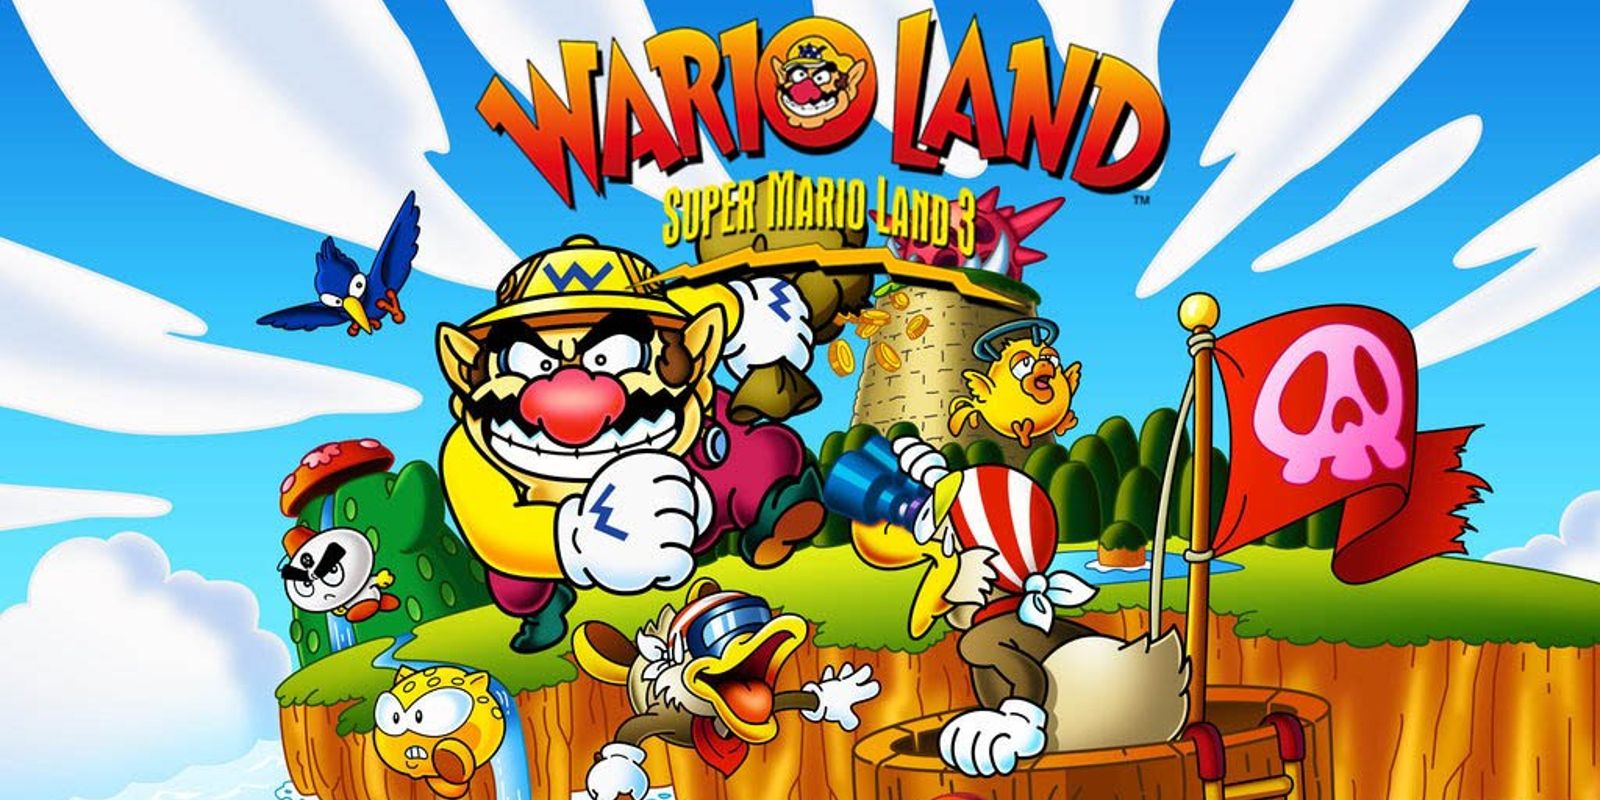 Cover artwork for Wario Land Super Mario Land 3